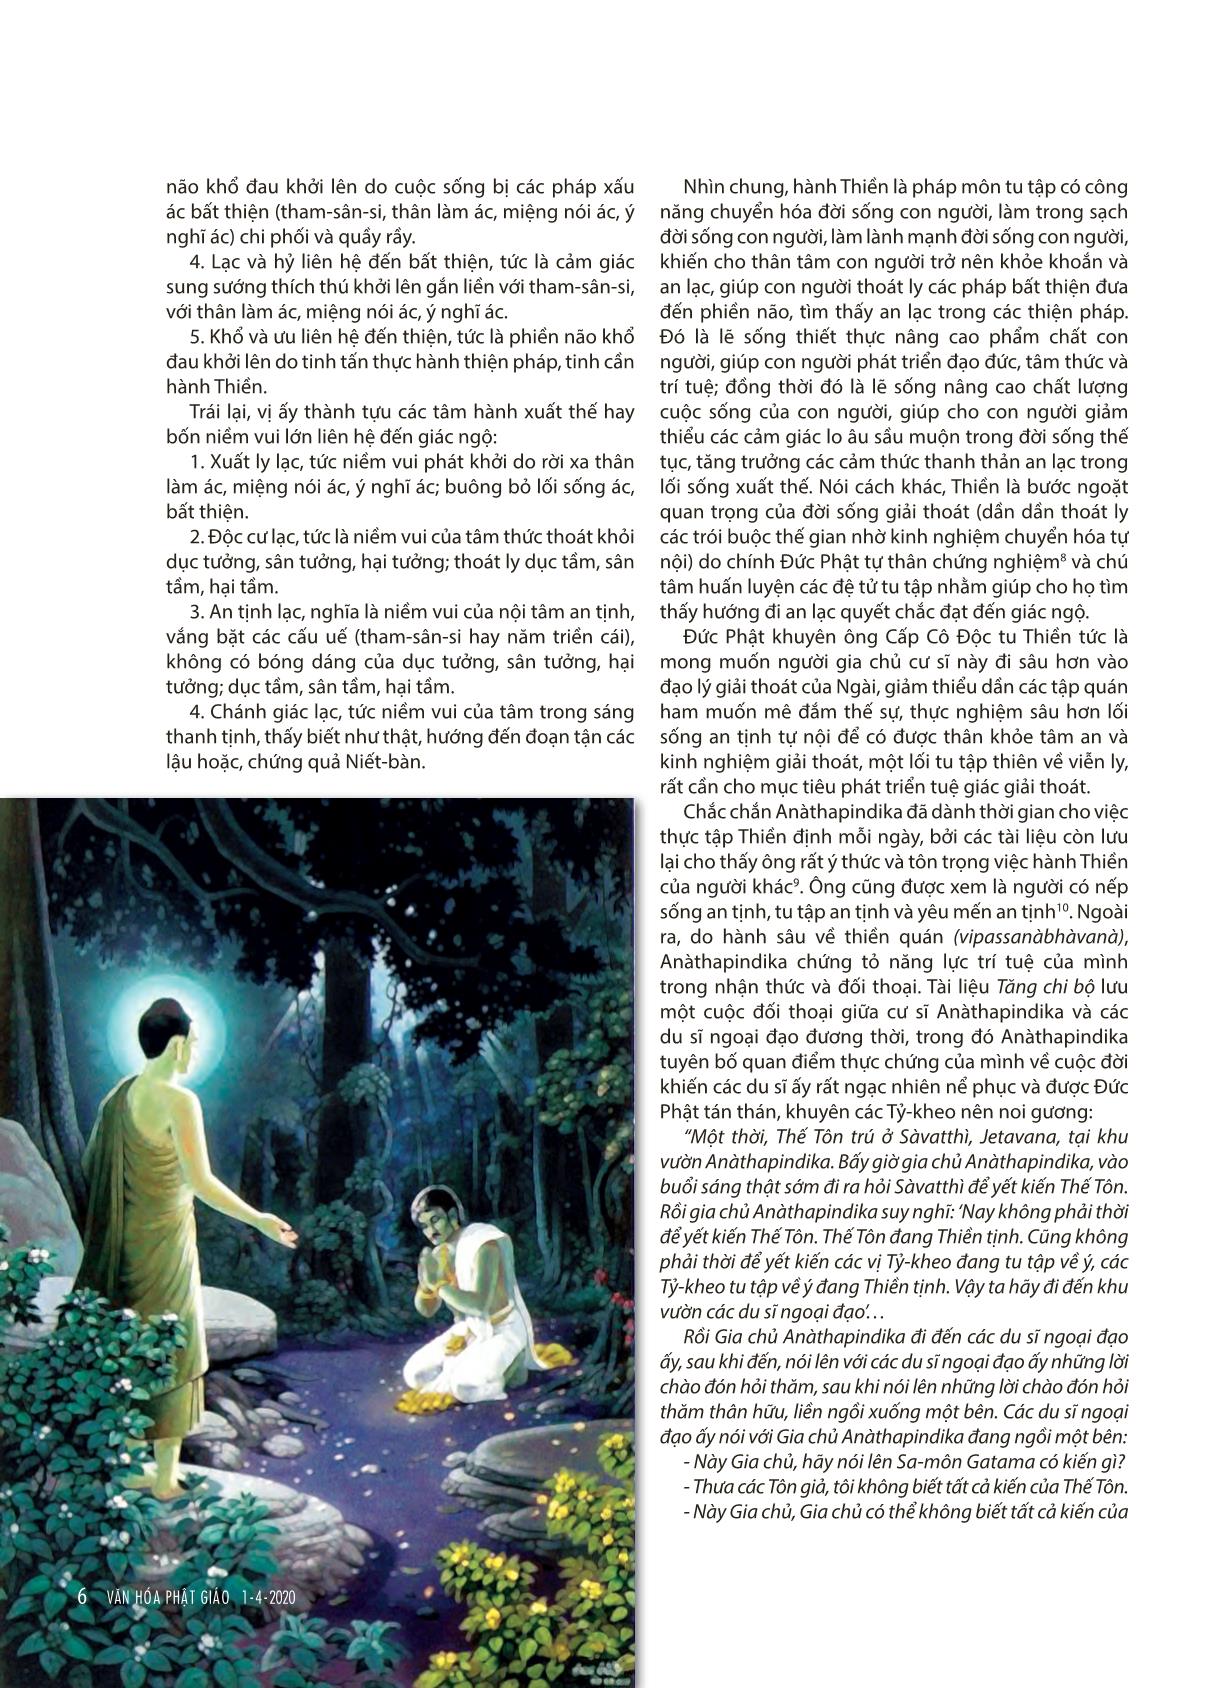 Tạp chí Văn hóa Phật giáo - Số 342 trang 8